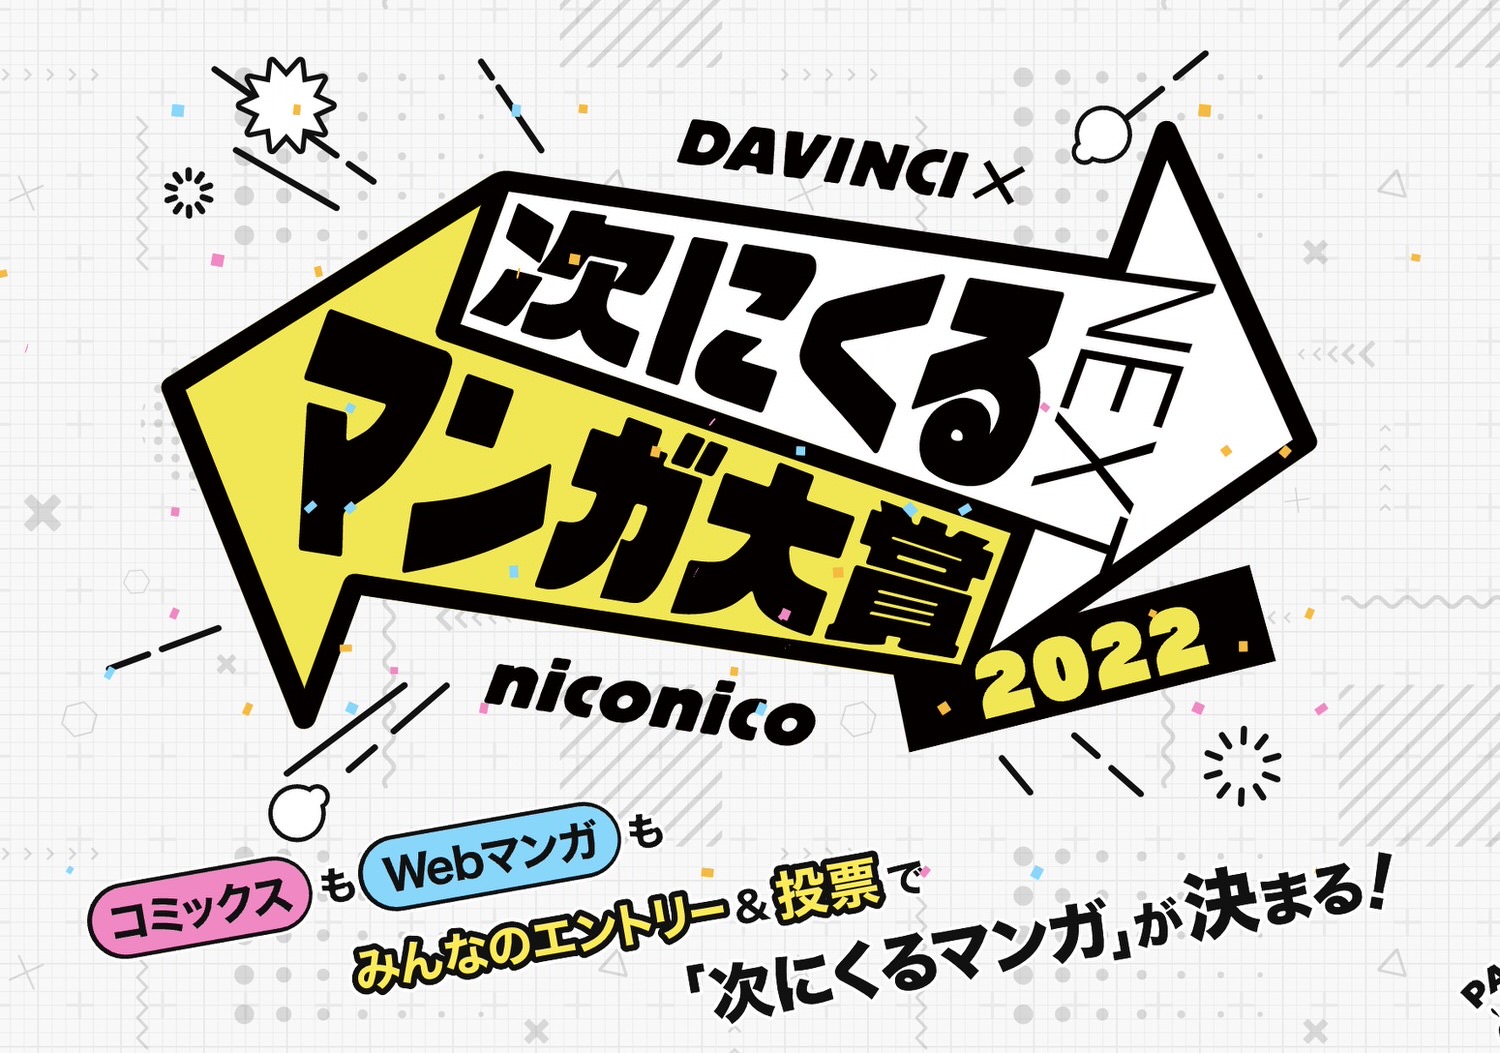 Next manga 2022